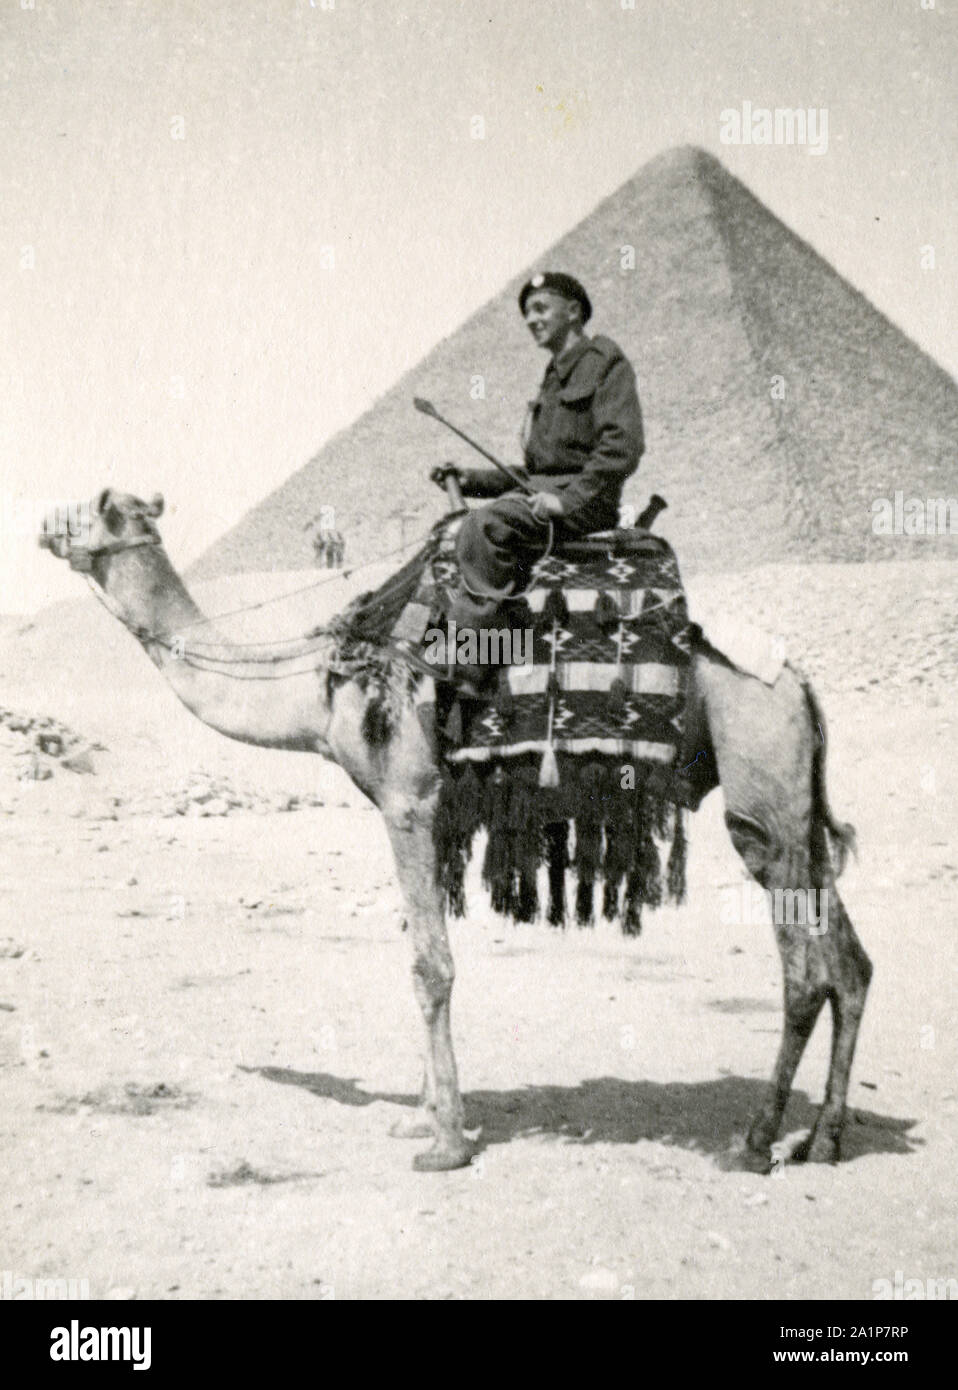 Fotos, die während des 2. Weltkrieges von britischen Soldaten des Royal Tank Regiment während der Nordafrika-Kampagne aufgenommen wurden. Soldat auf einem Kamel vor der Pyramide. Trooper C M Shoults Stockfoto